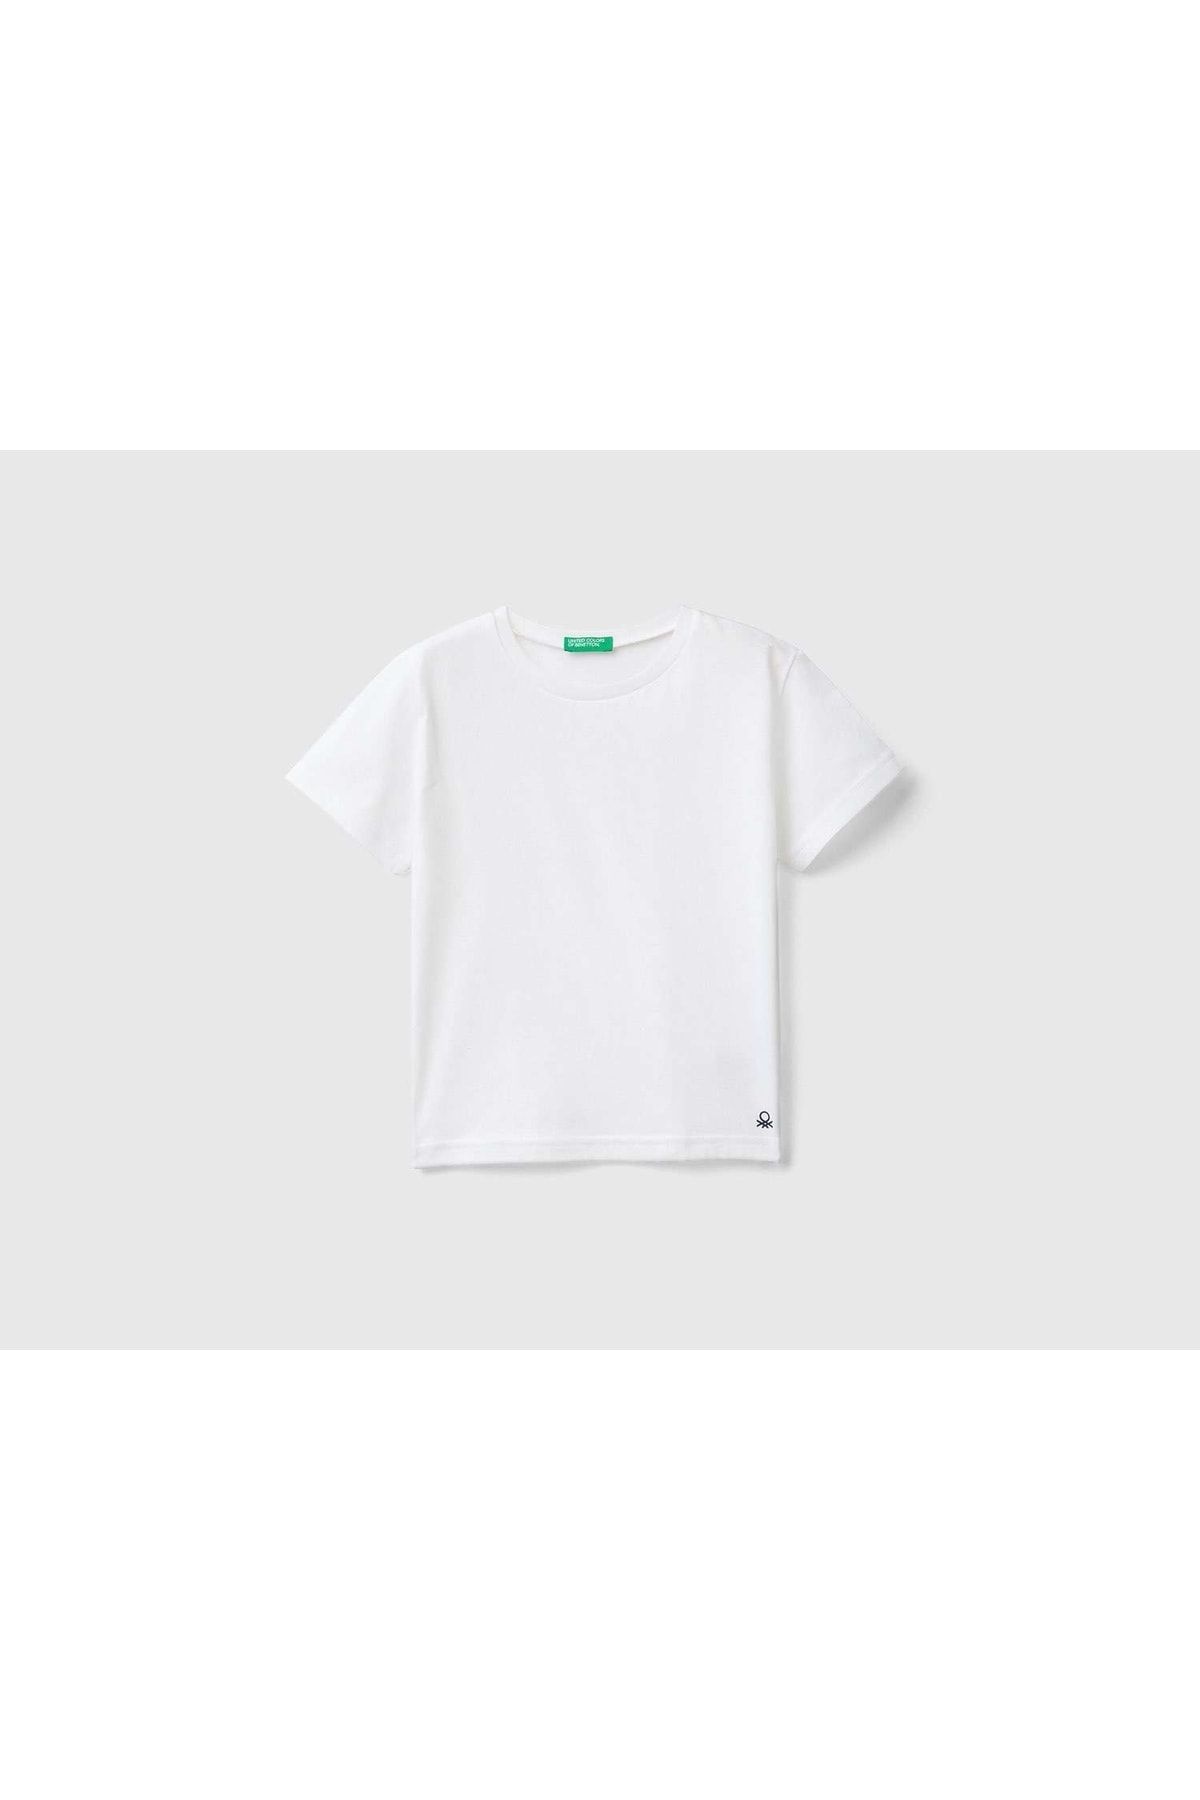 United Colors of Benetton Erkek Çocuk Beyaz Benetton Logo Basic T-shirt